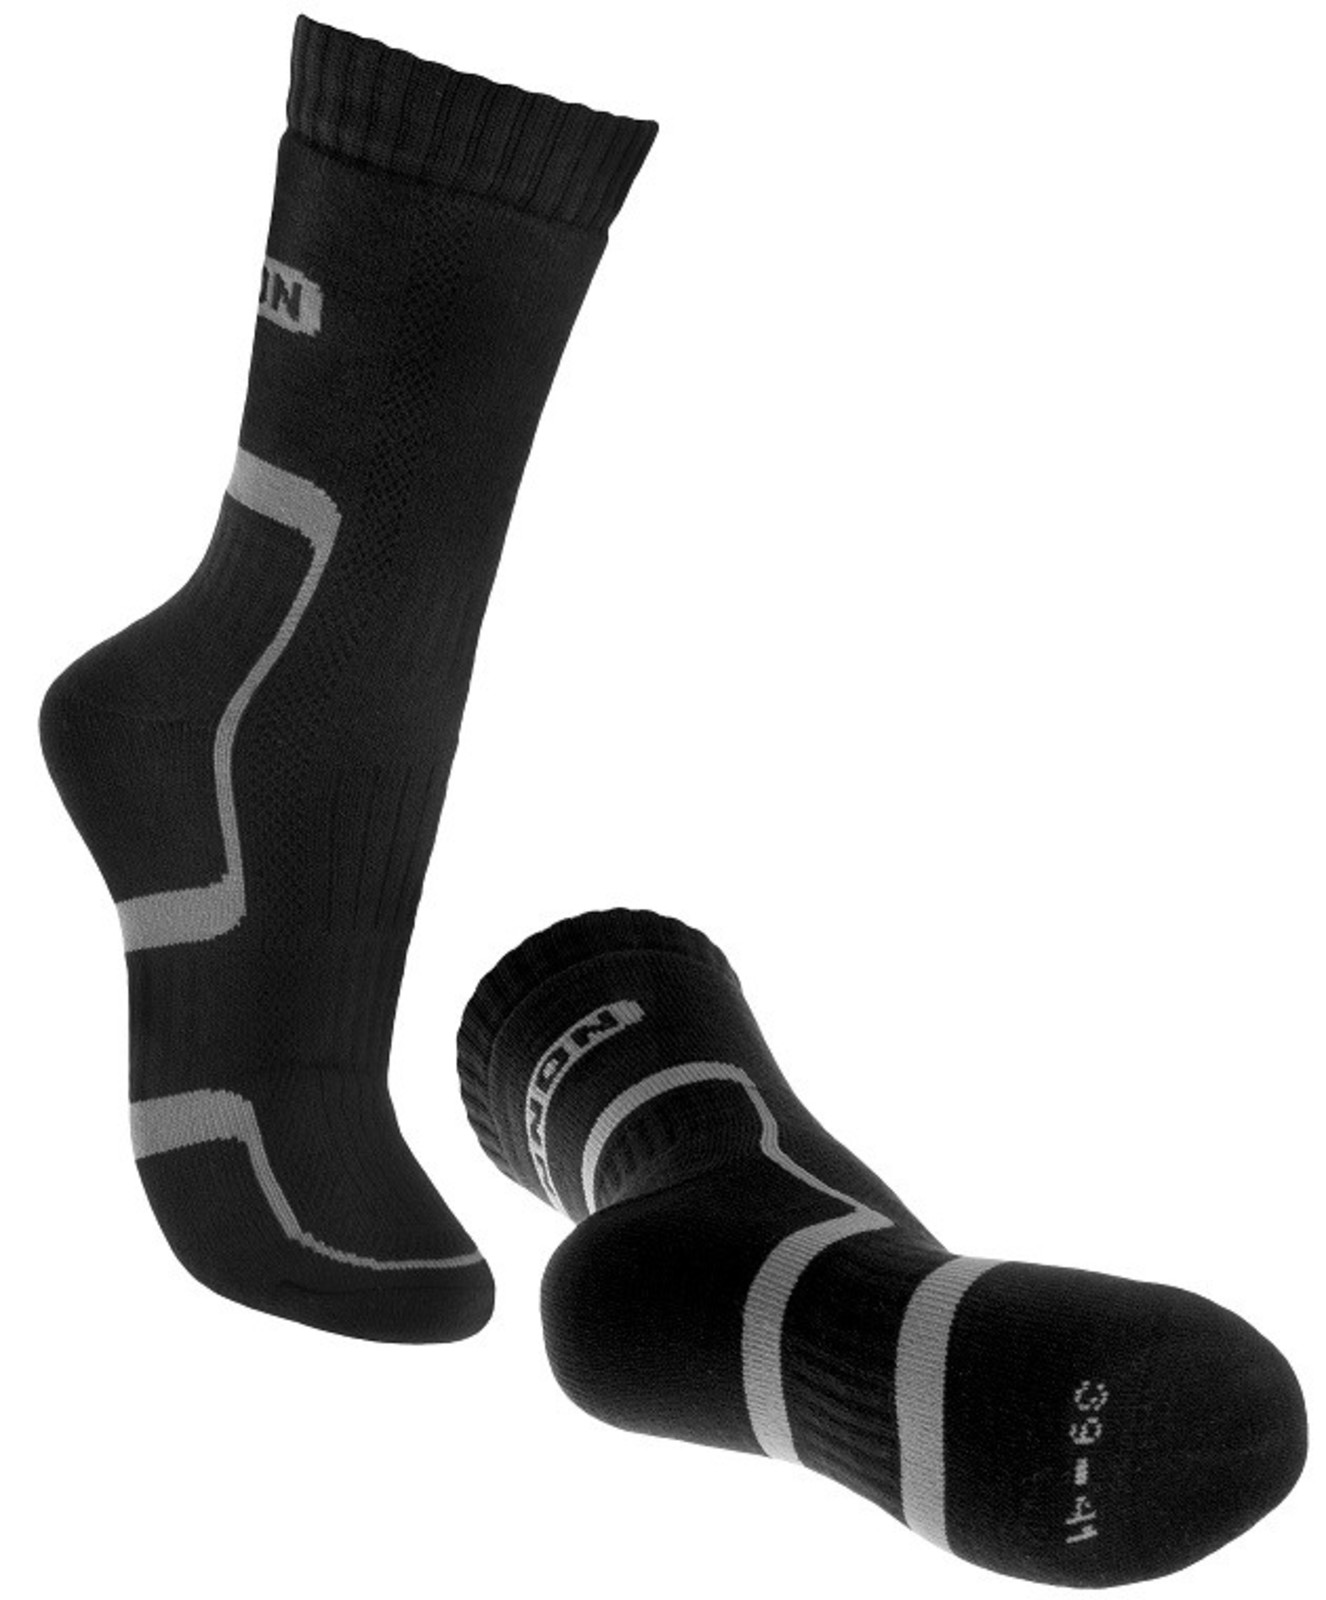 Ponožky Bennon Trek  - veľkosť: 45-47, farba: sivá/čierna